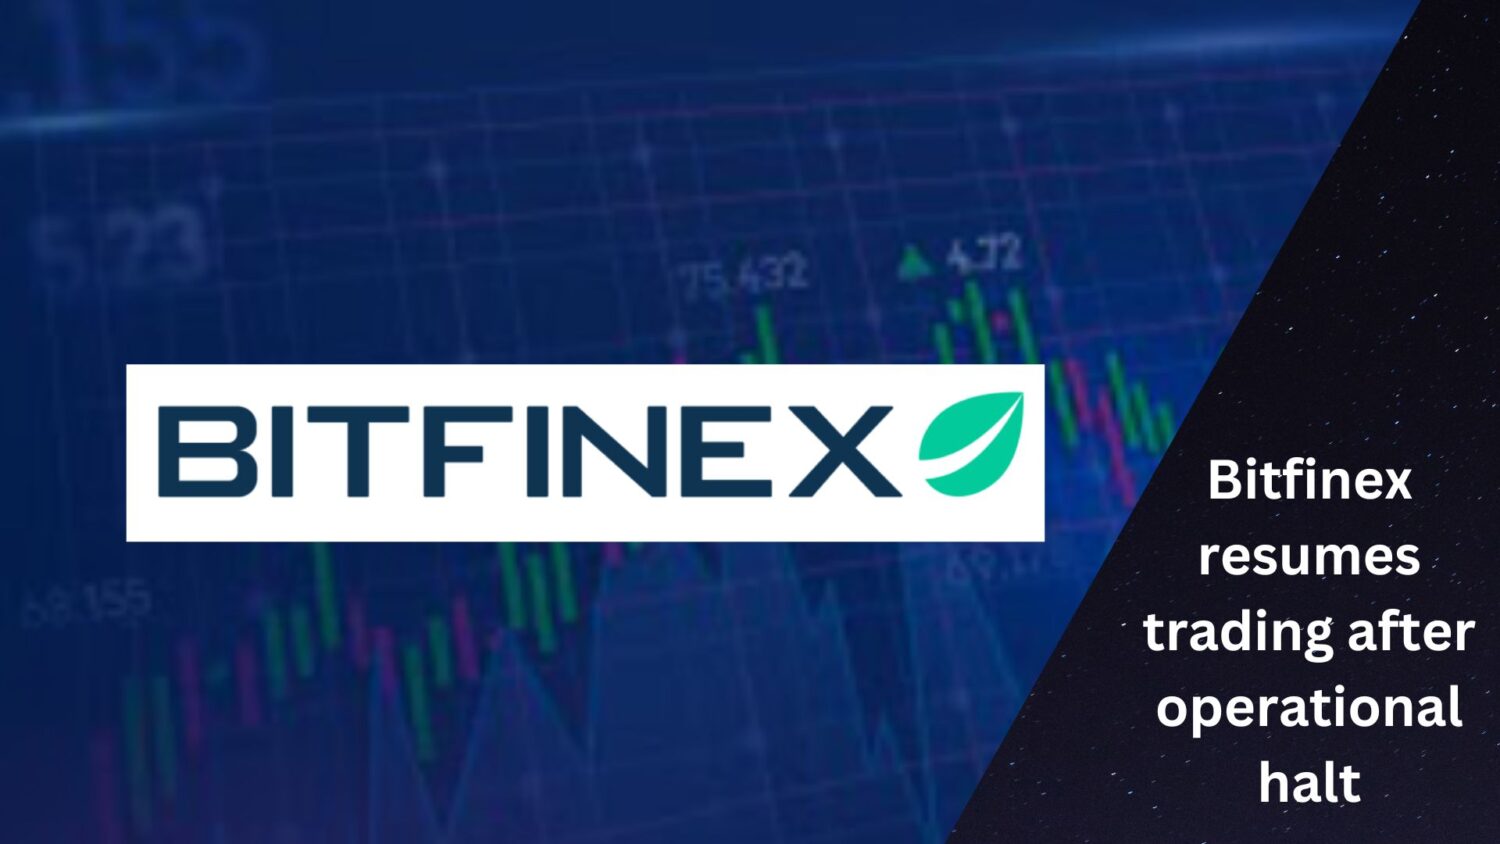 Bitfinex Resumes Trading After Operational Halt